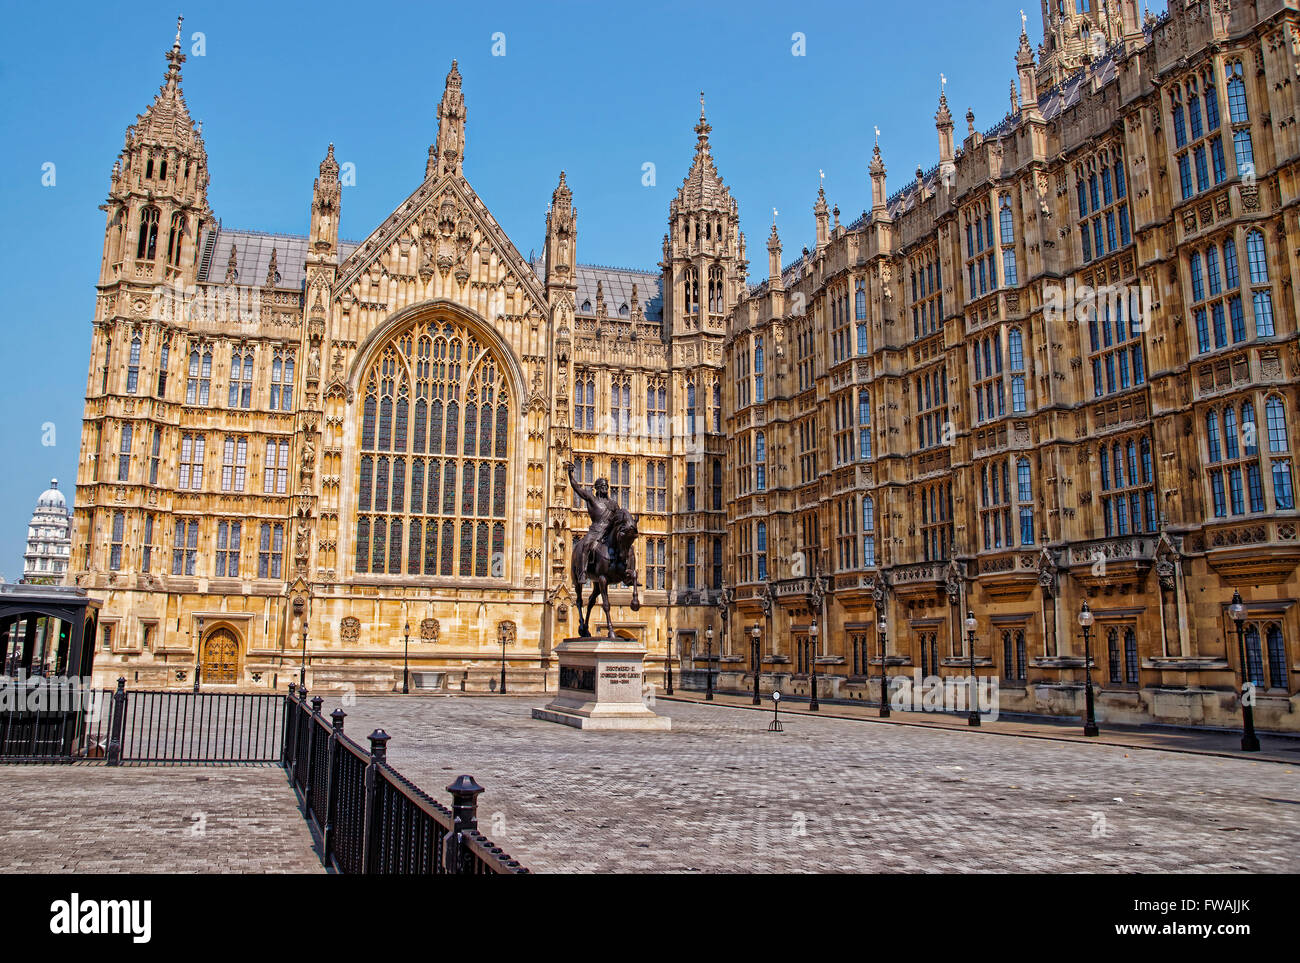 König-Denkmal in Old Palace Yard am Palace of Westminster in London, Großbritannien. Der Westminster-Palast ist ein Treffpunkt für die beiden Häuser des Parlaments des Vereinigten Königreichs. Stockfoto